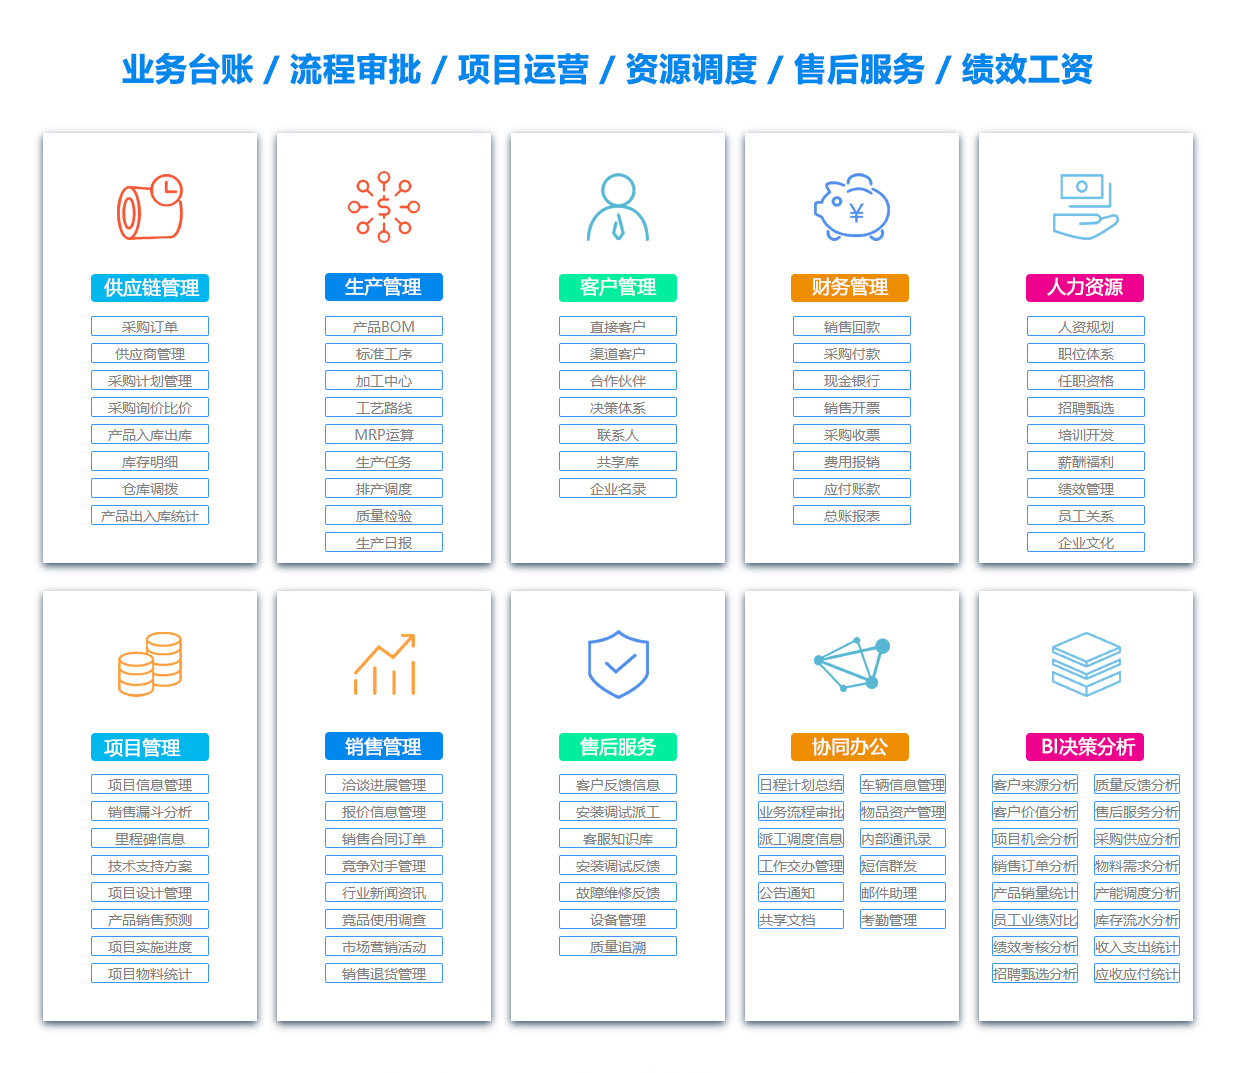 三明EC:电子商务软件